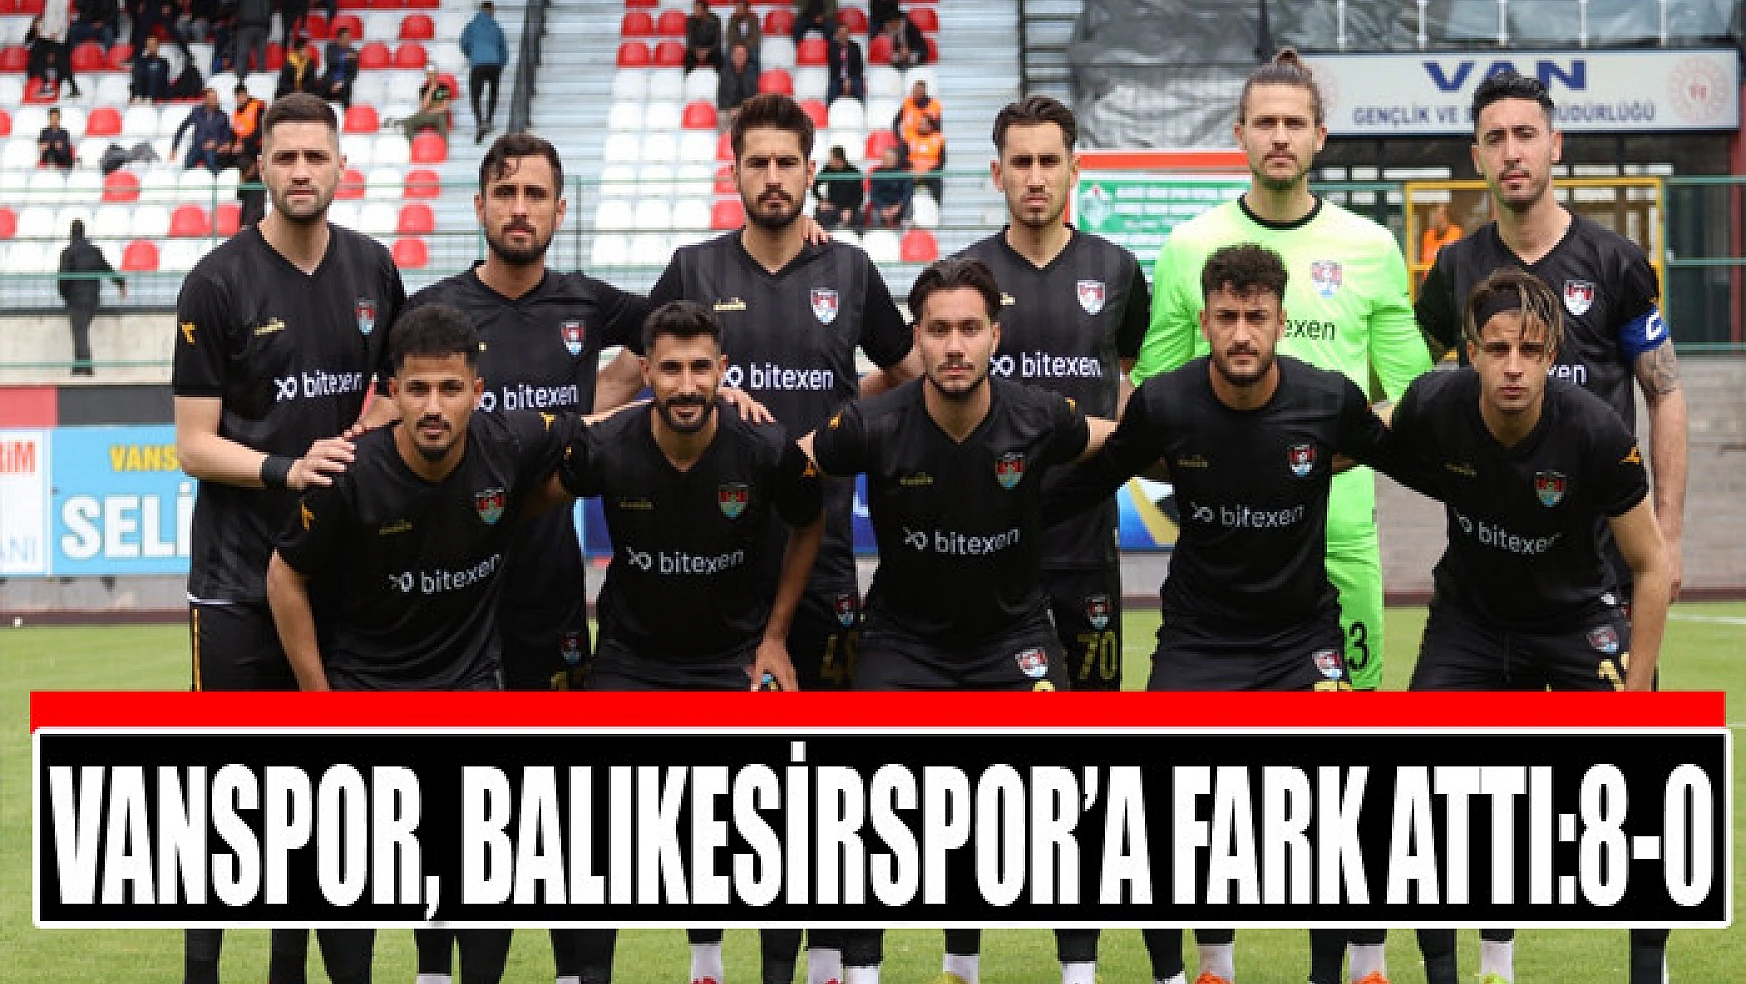 Vanspor, Balıkesirspor'a fark attı:8-0